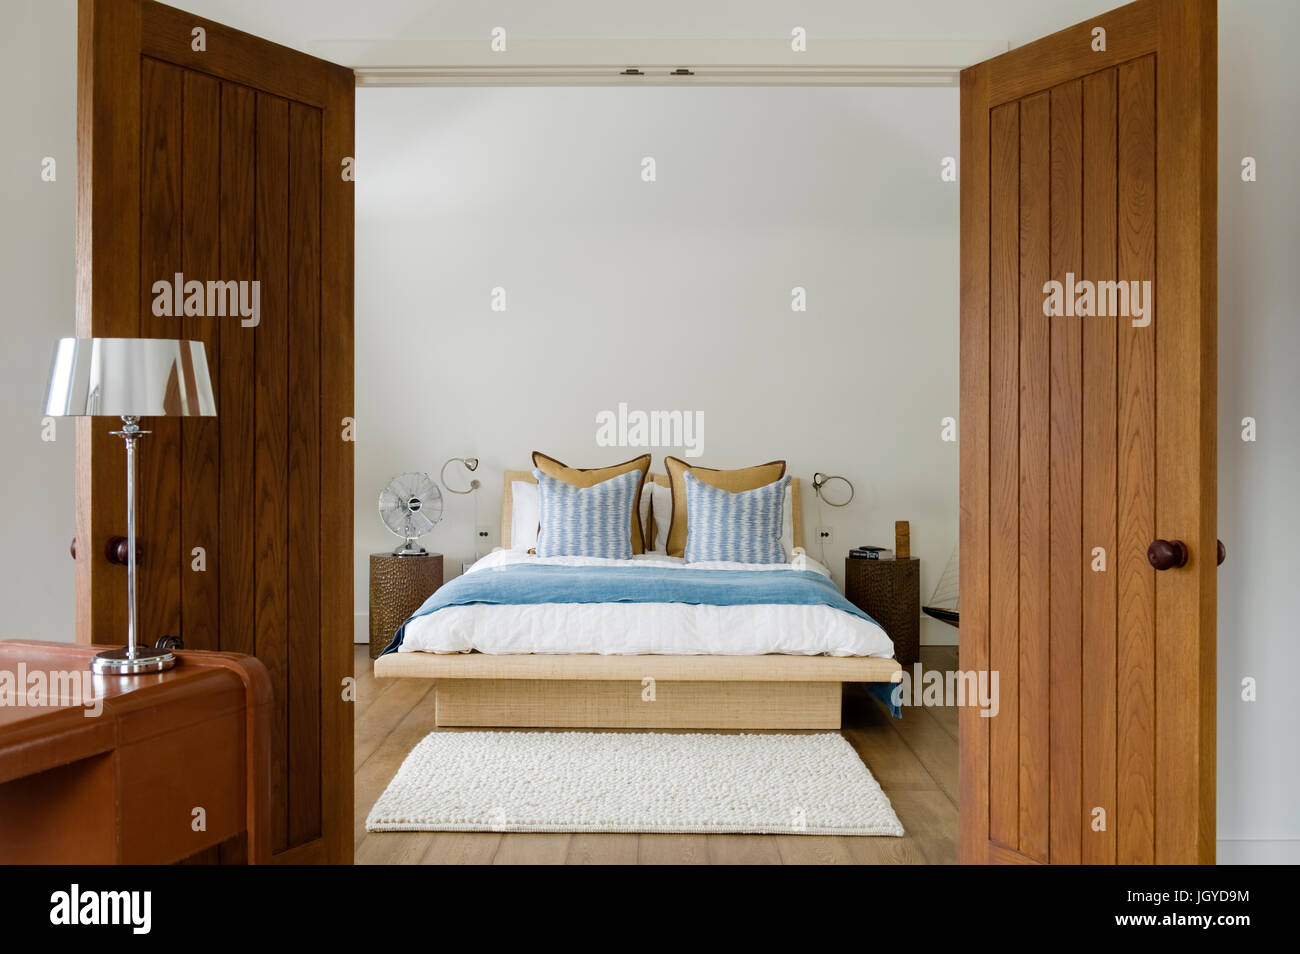 Abrir puertas de madera a lo largo de la costa de dormitorio Foto de stock